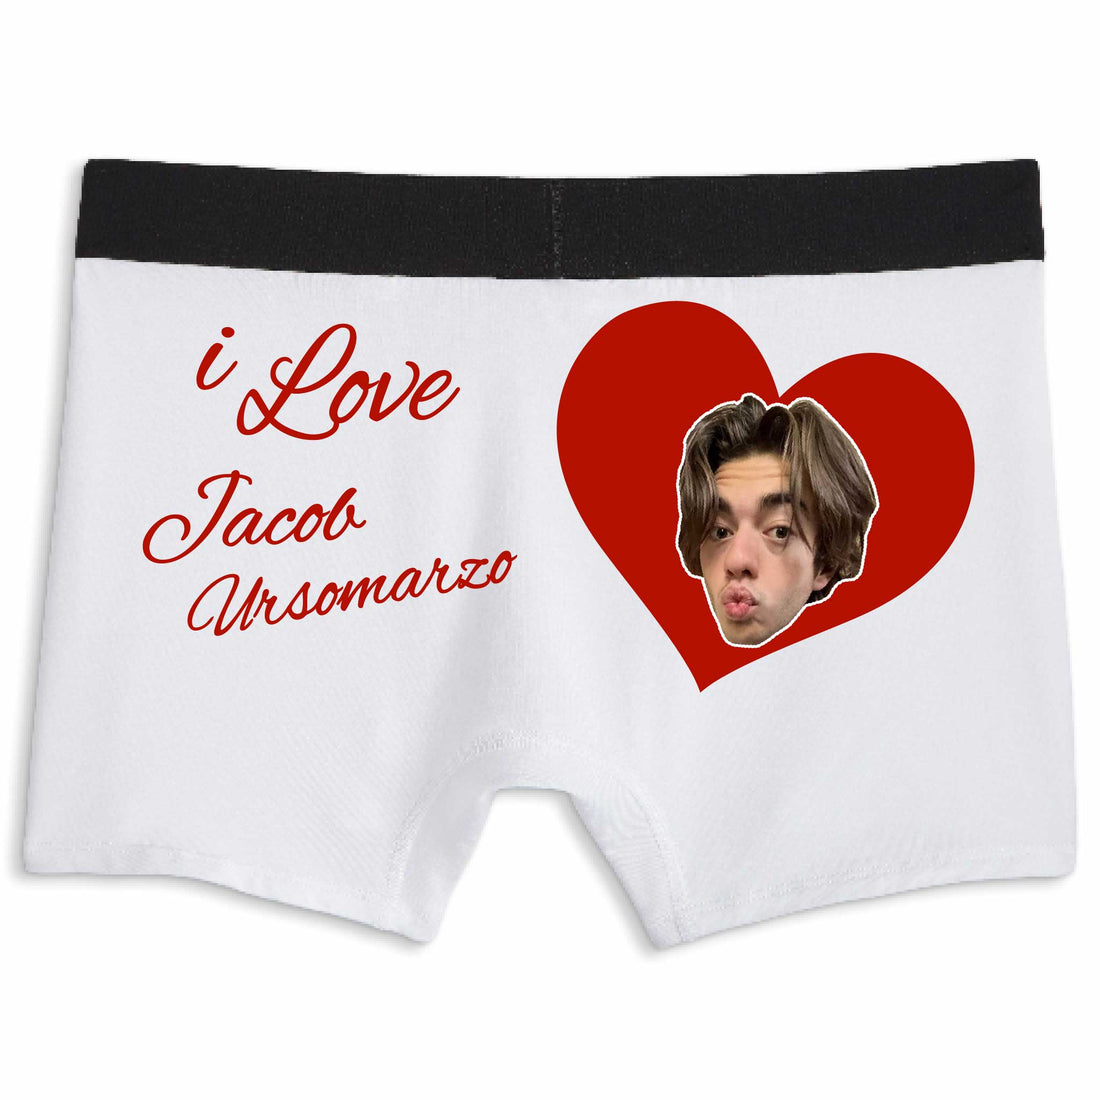 I Love Jacob | Boxer Briefs Underwear